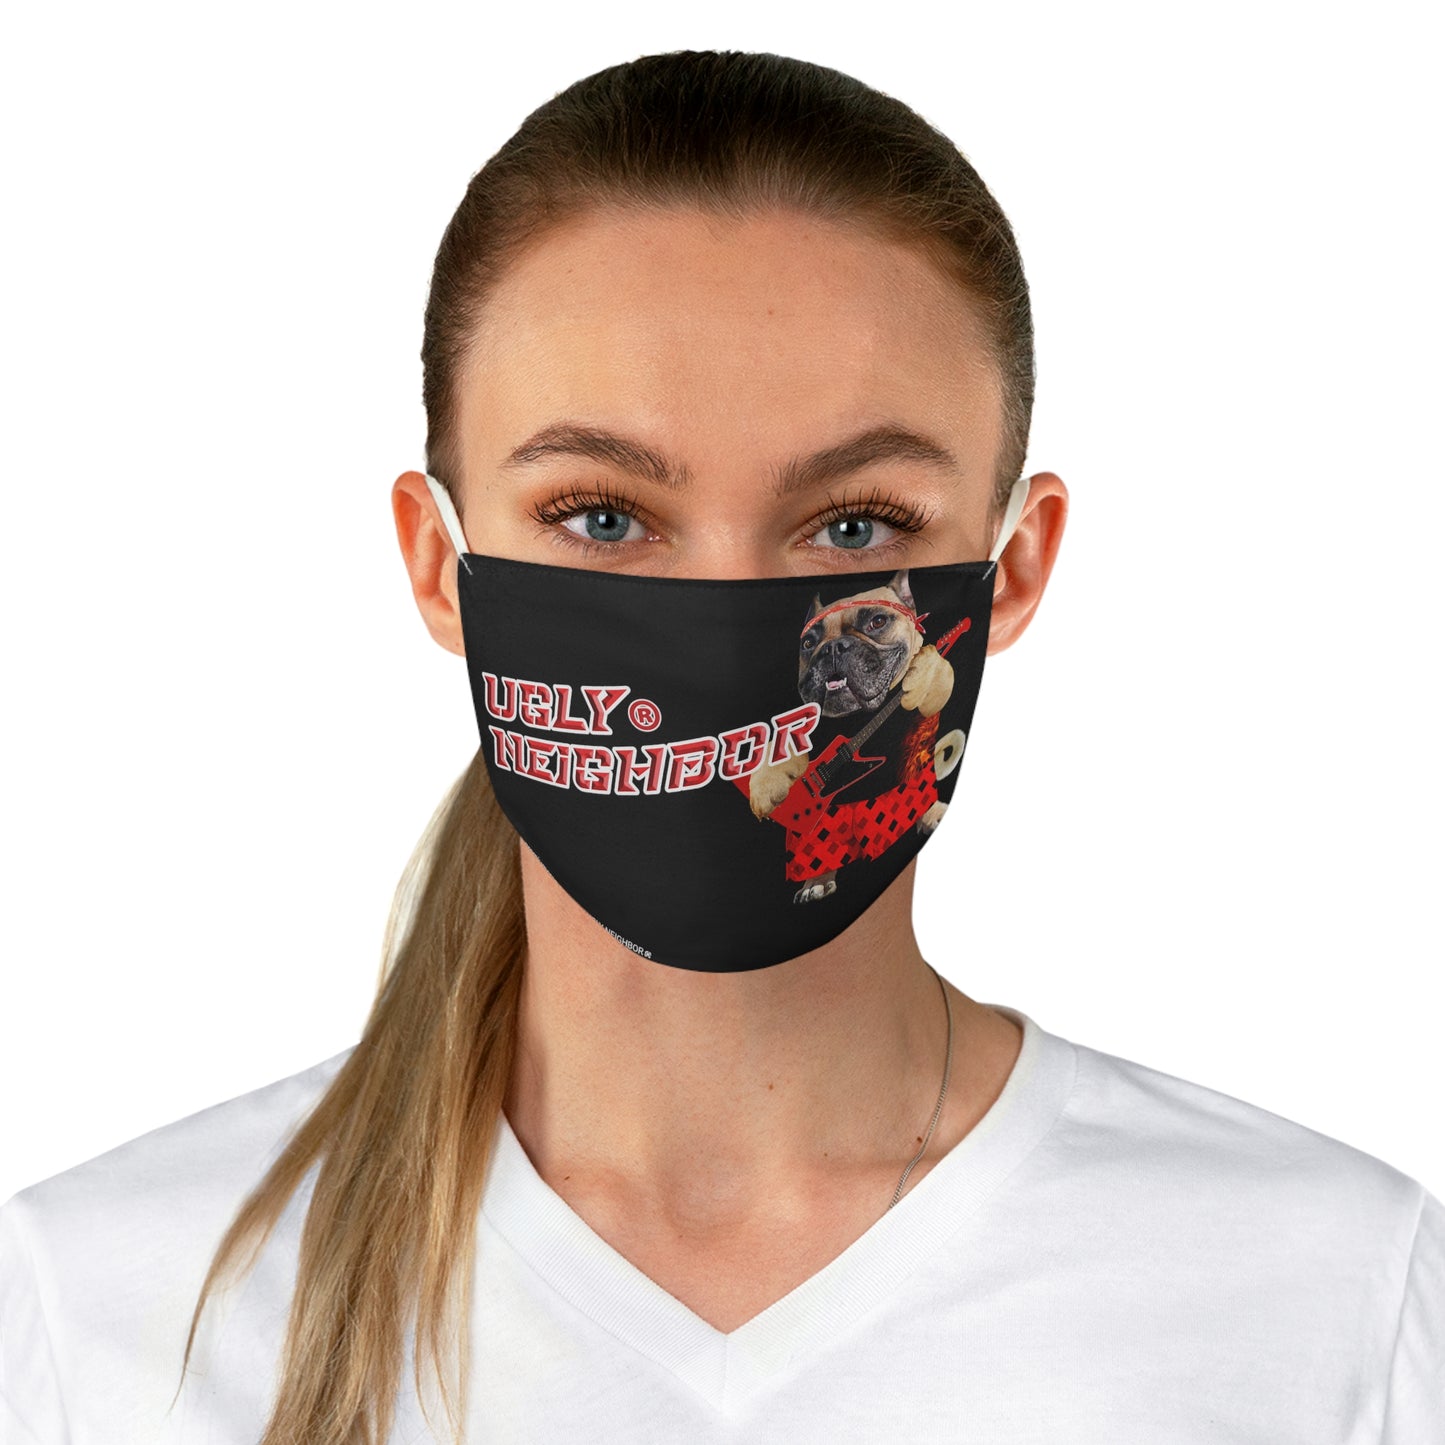 Ugly Neighbor II Fabric Face Mask